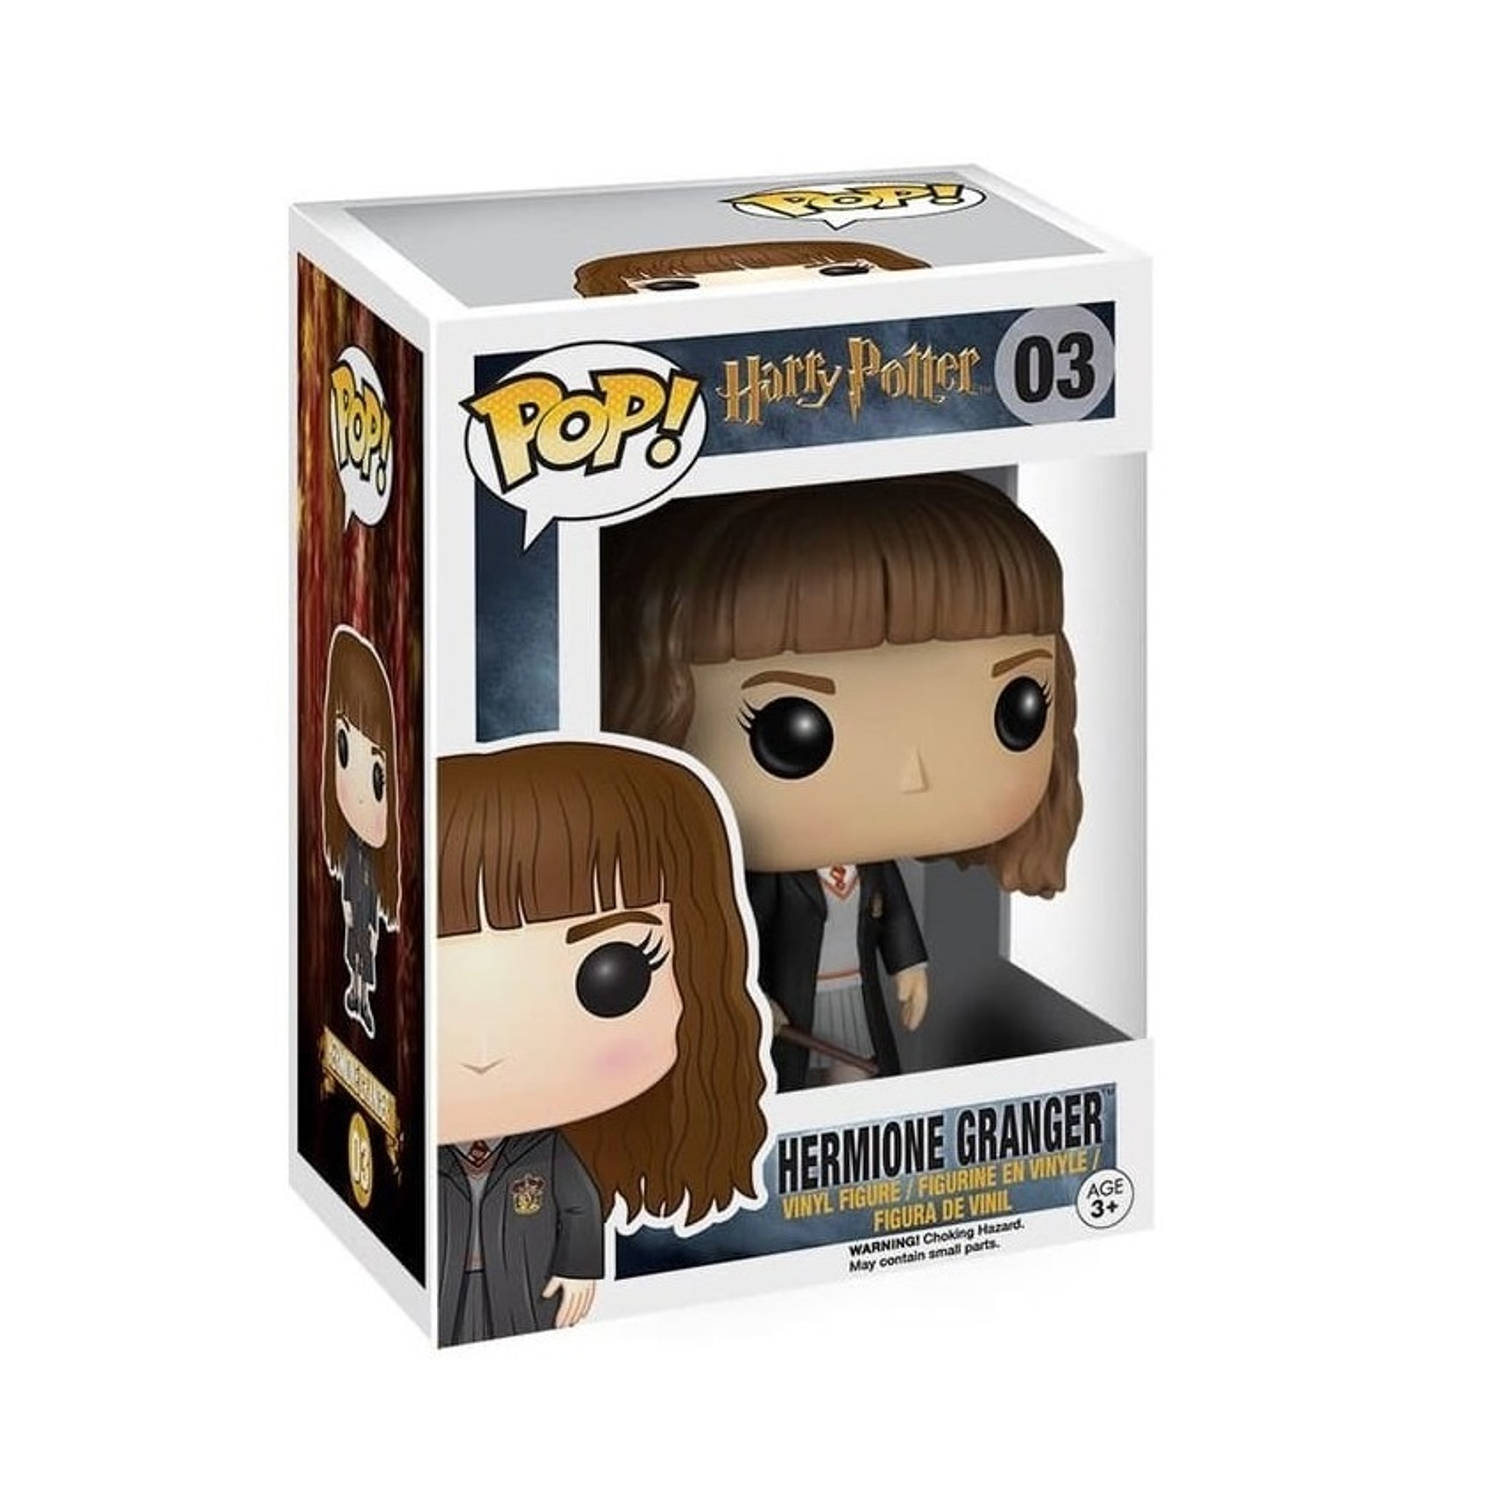 Harry Potter Hermione Granger Pop! Vinyl Figure